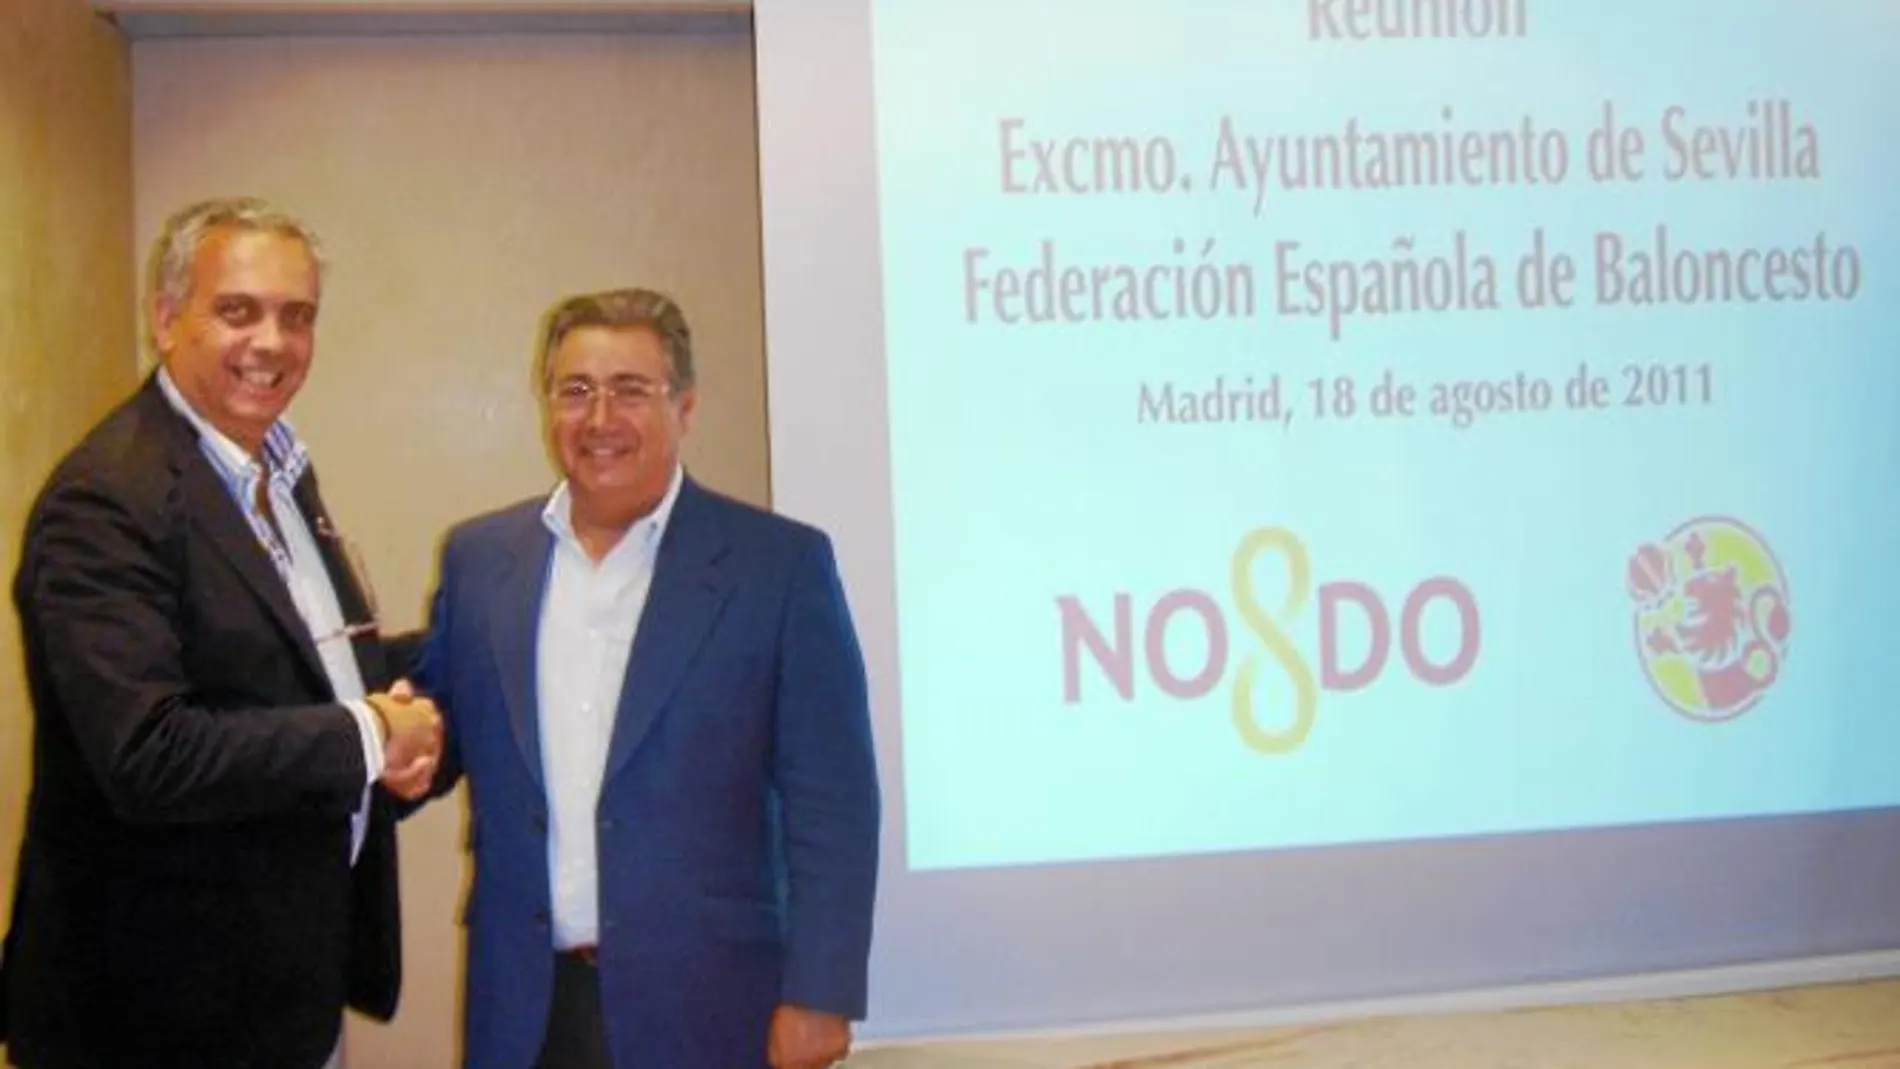 El alcalde, Juan Ignacio Zoido, y el presidente de la Federación de Baloncesto, José Luis Sáez